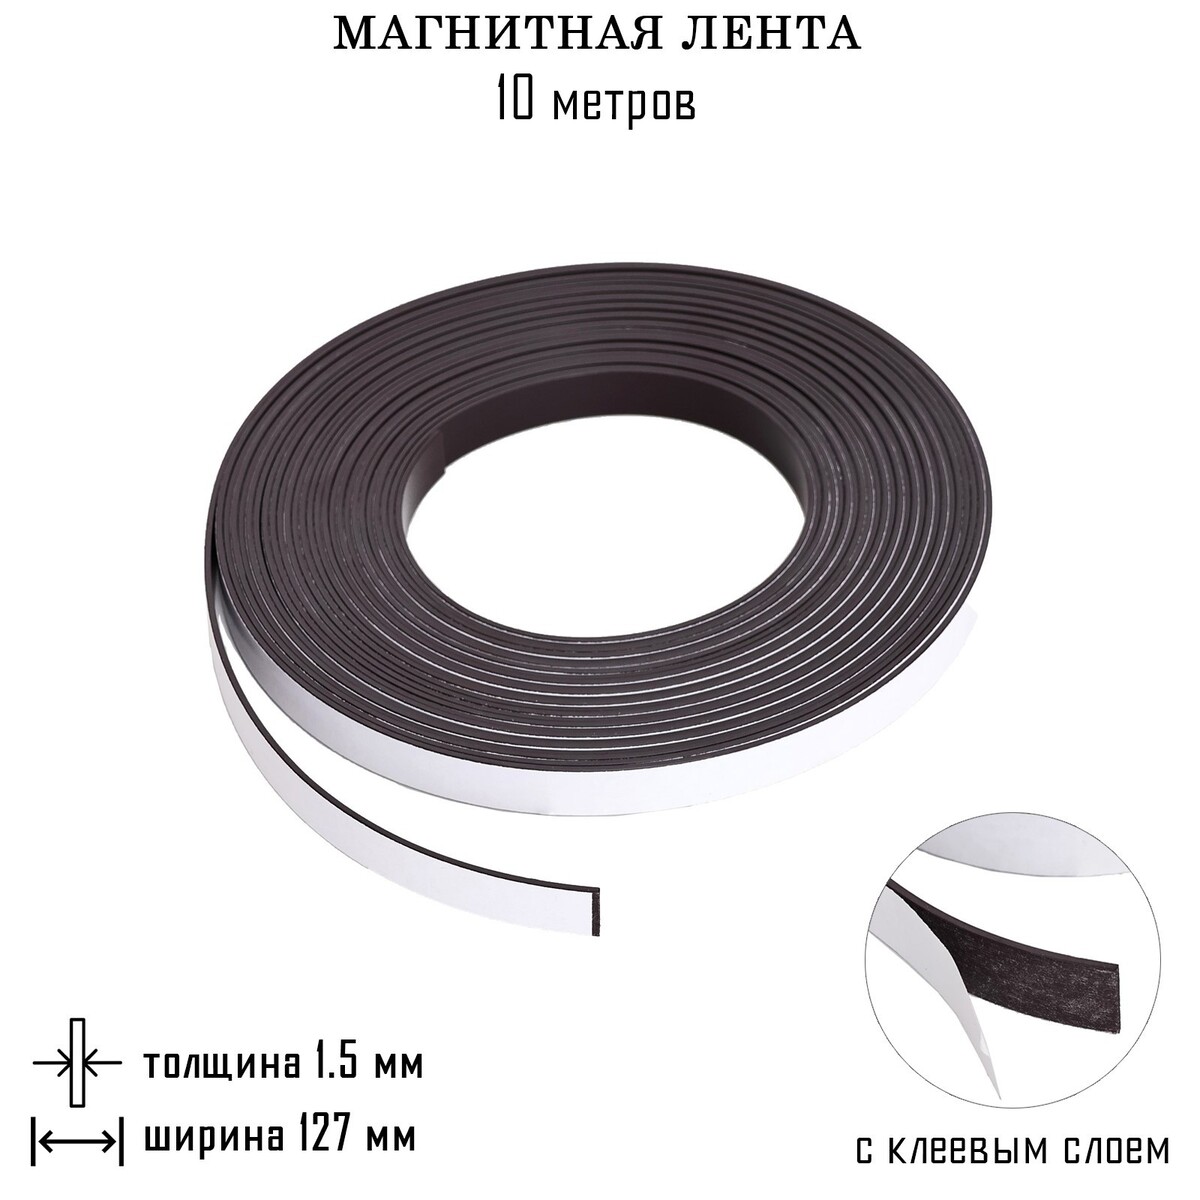 Магнитная лента, с клеевым слоем, 10 метров, толщина 1.5 мм, ширина 12.7 см магнитный винил с клеевым слоем 10 шт толщина 0 4 мм 21 х 15 см